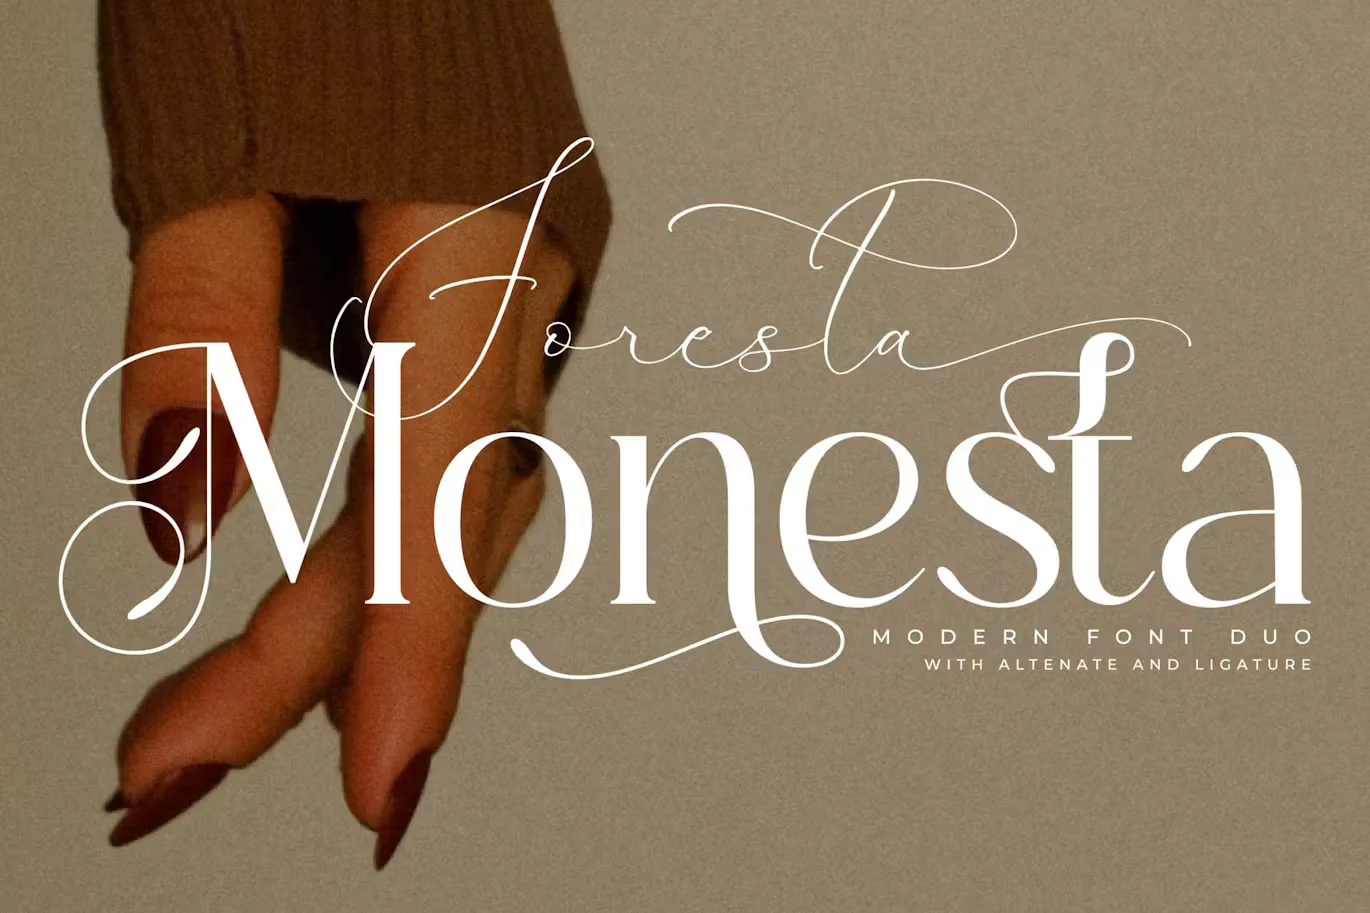 Foresta Monesta Modern Font Duo